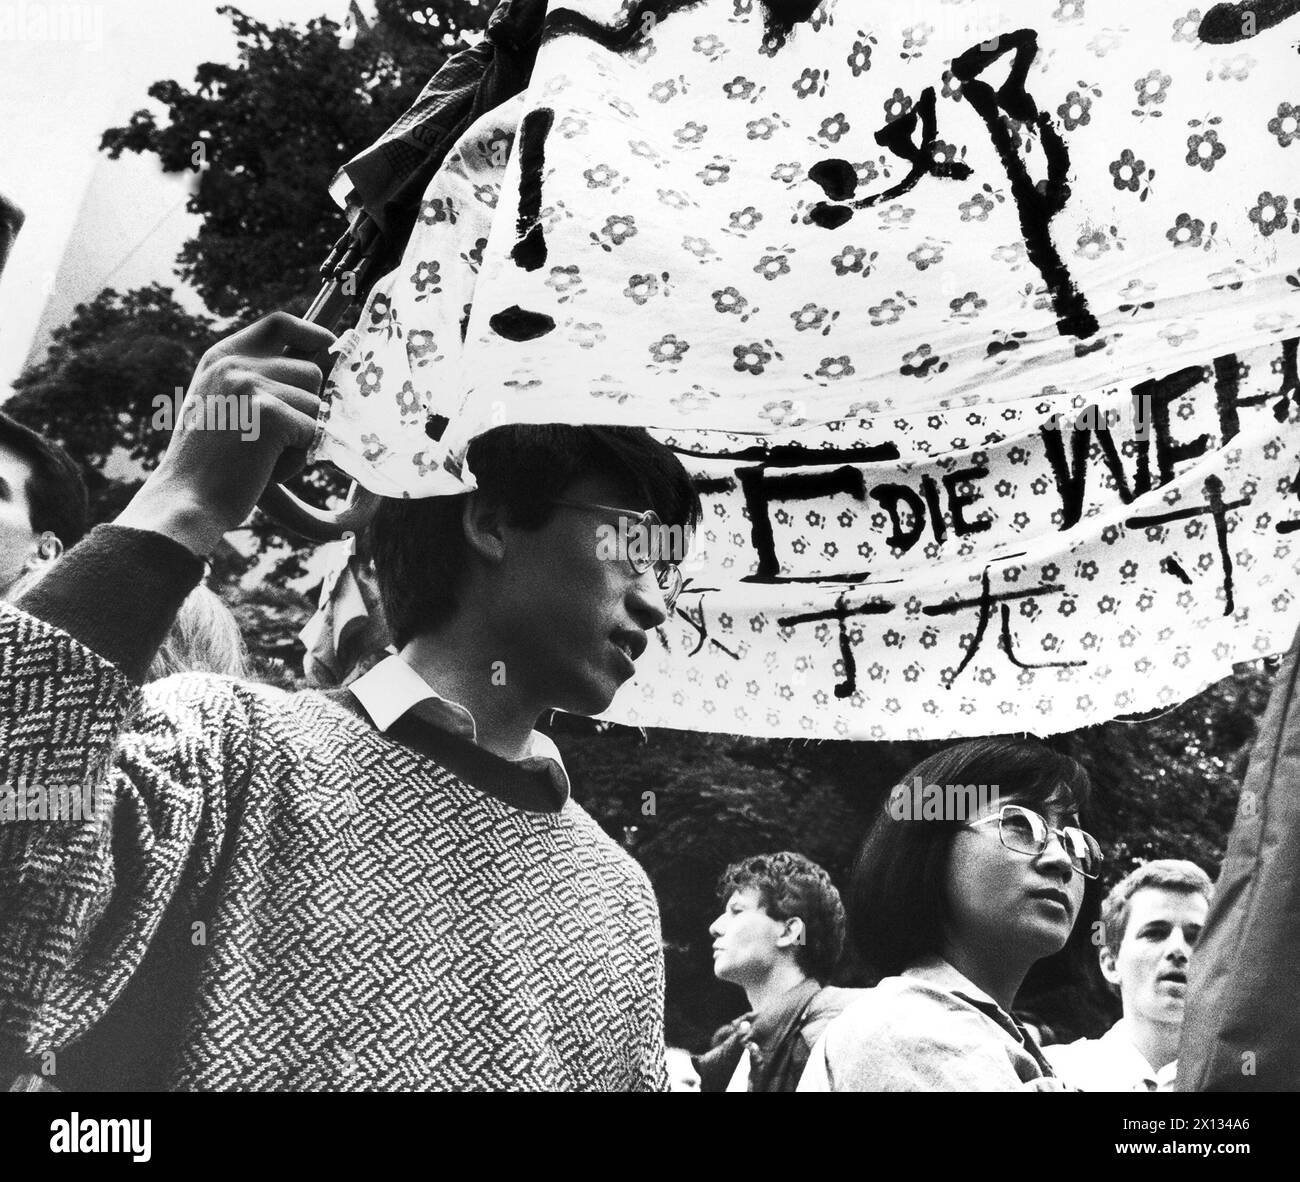 Wien am 4. Juni 1989: Rund 500 Menschen demonstrierten vor der chinesischen Botschaft in Wien gegen die brutalen Methoden der Armee und das daraus resultierende Massaker in Peking. - 19890604 PD0002 - Rechteinfo: Rechte verwaltet (RM) Stockfoto